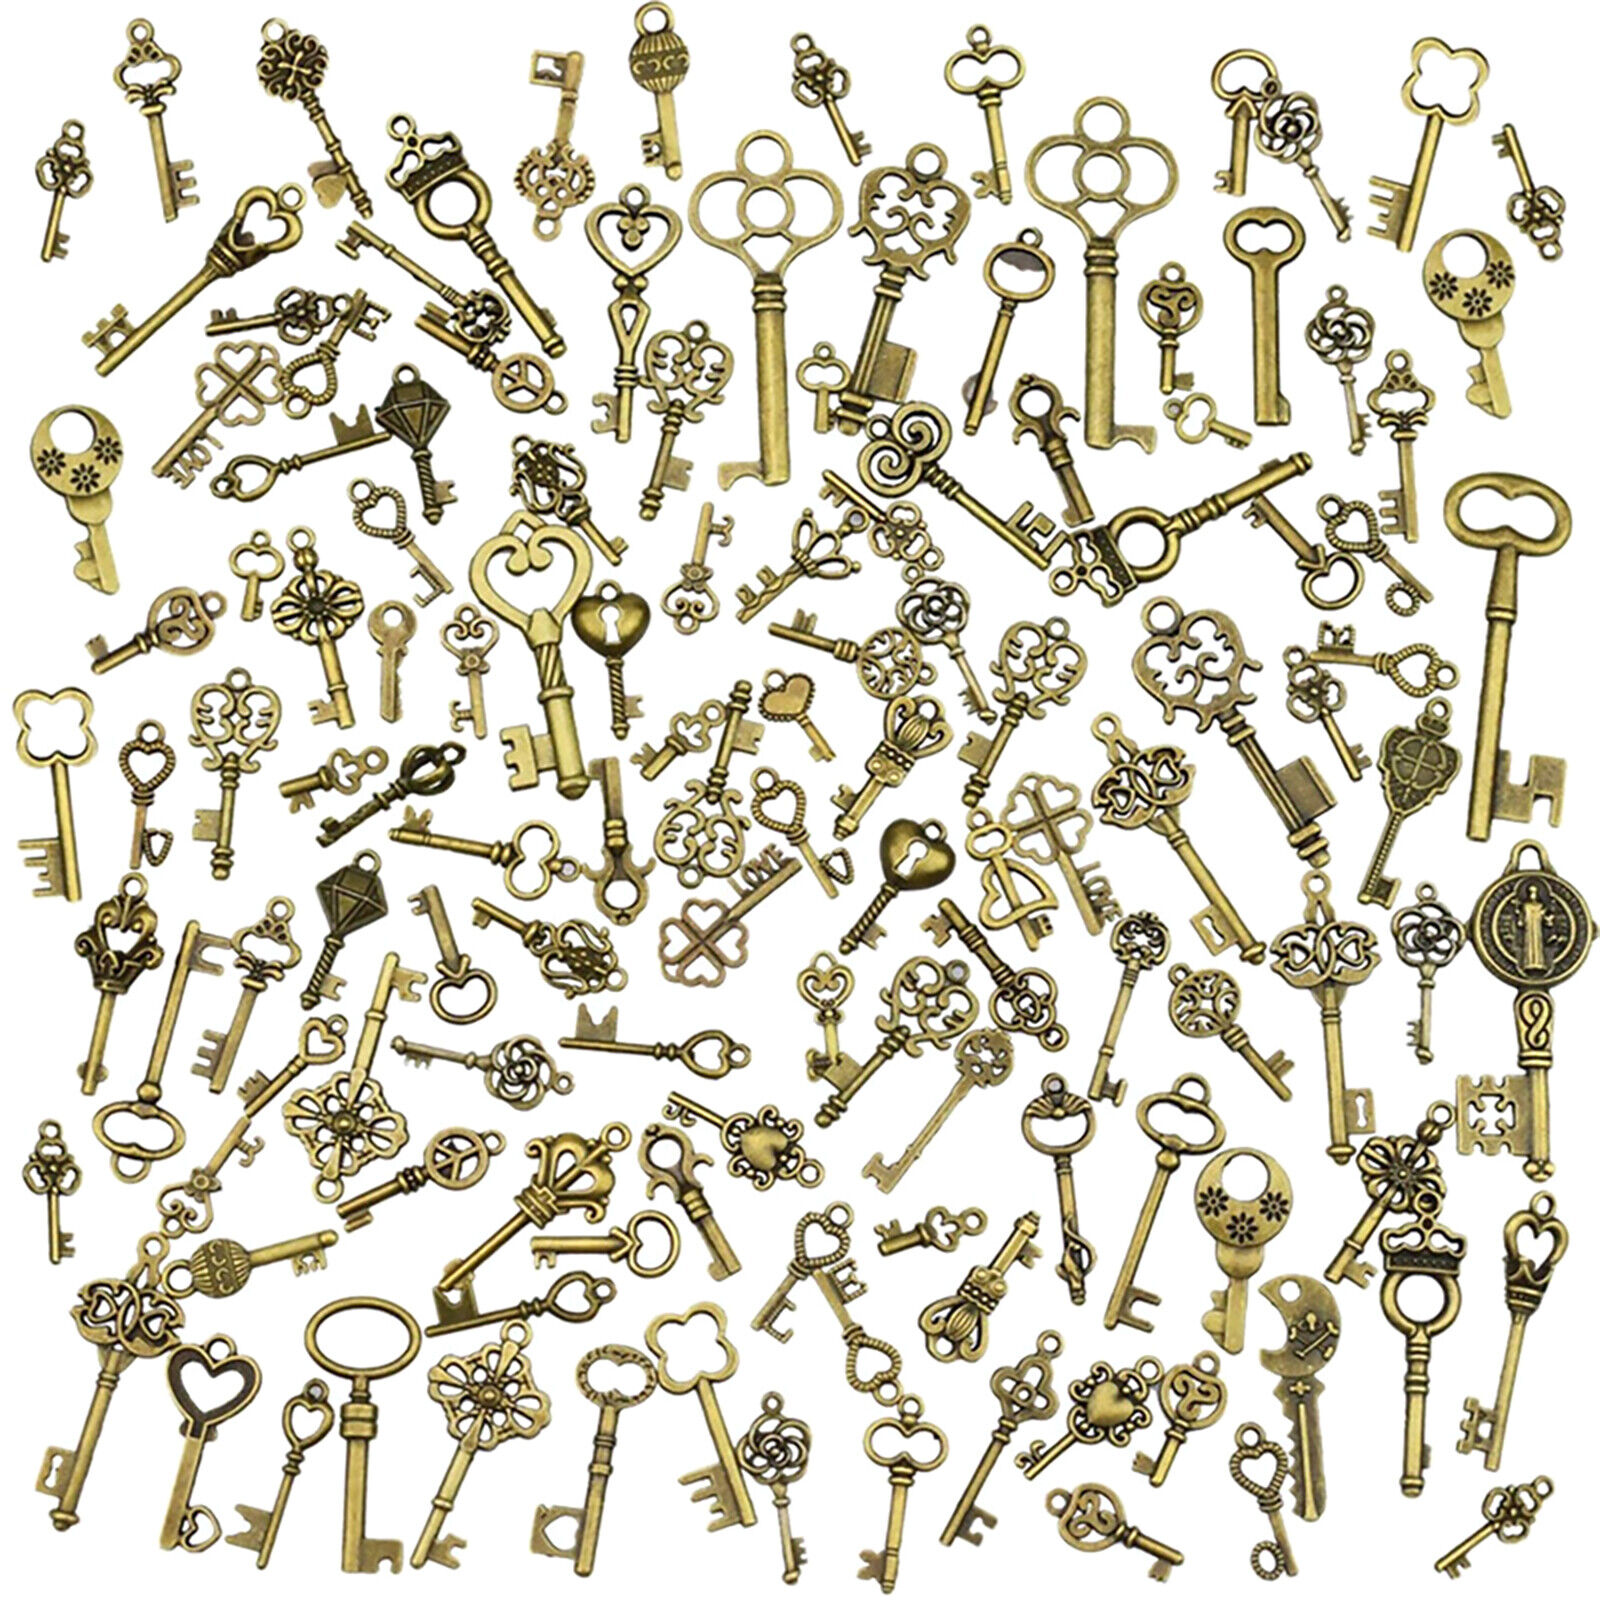 125Pcs/Set Vintage Style Antique Skeleton Furniture Cabinet Old Lock Keys Deco